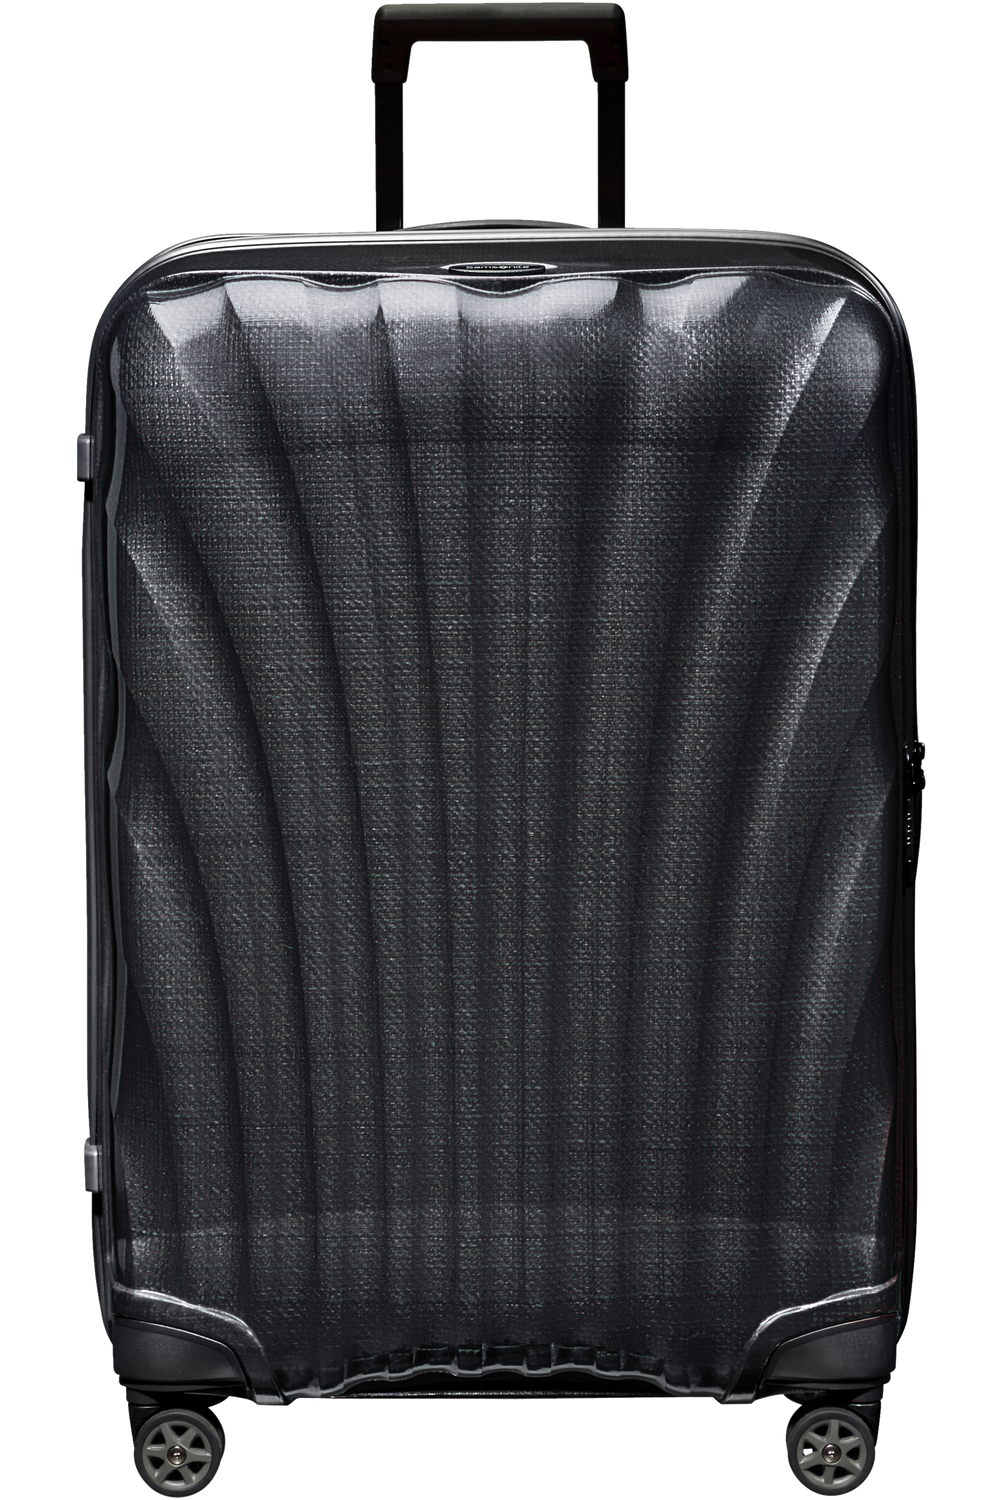 Koffert | Curv materiale | Stor | Sort | 4 Hjul | TSA Lås | 10 Års Garanti | C-LITE SPINNE